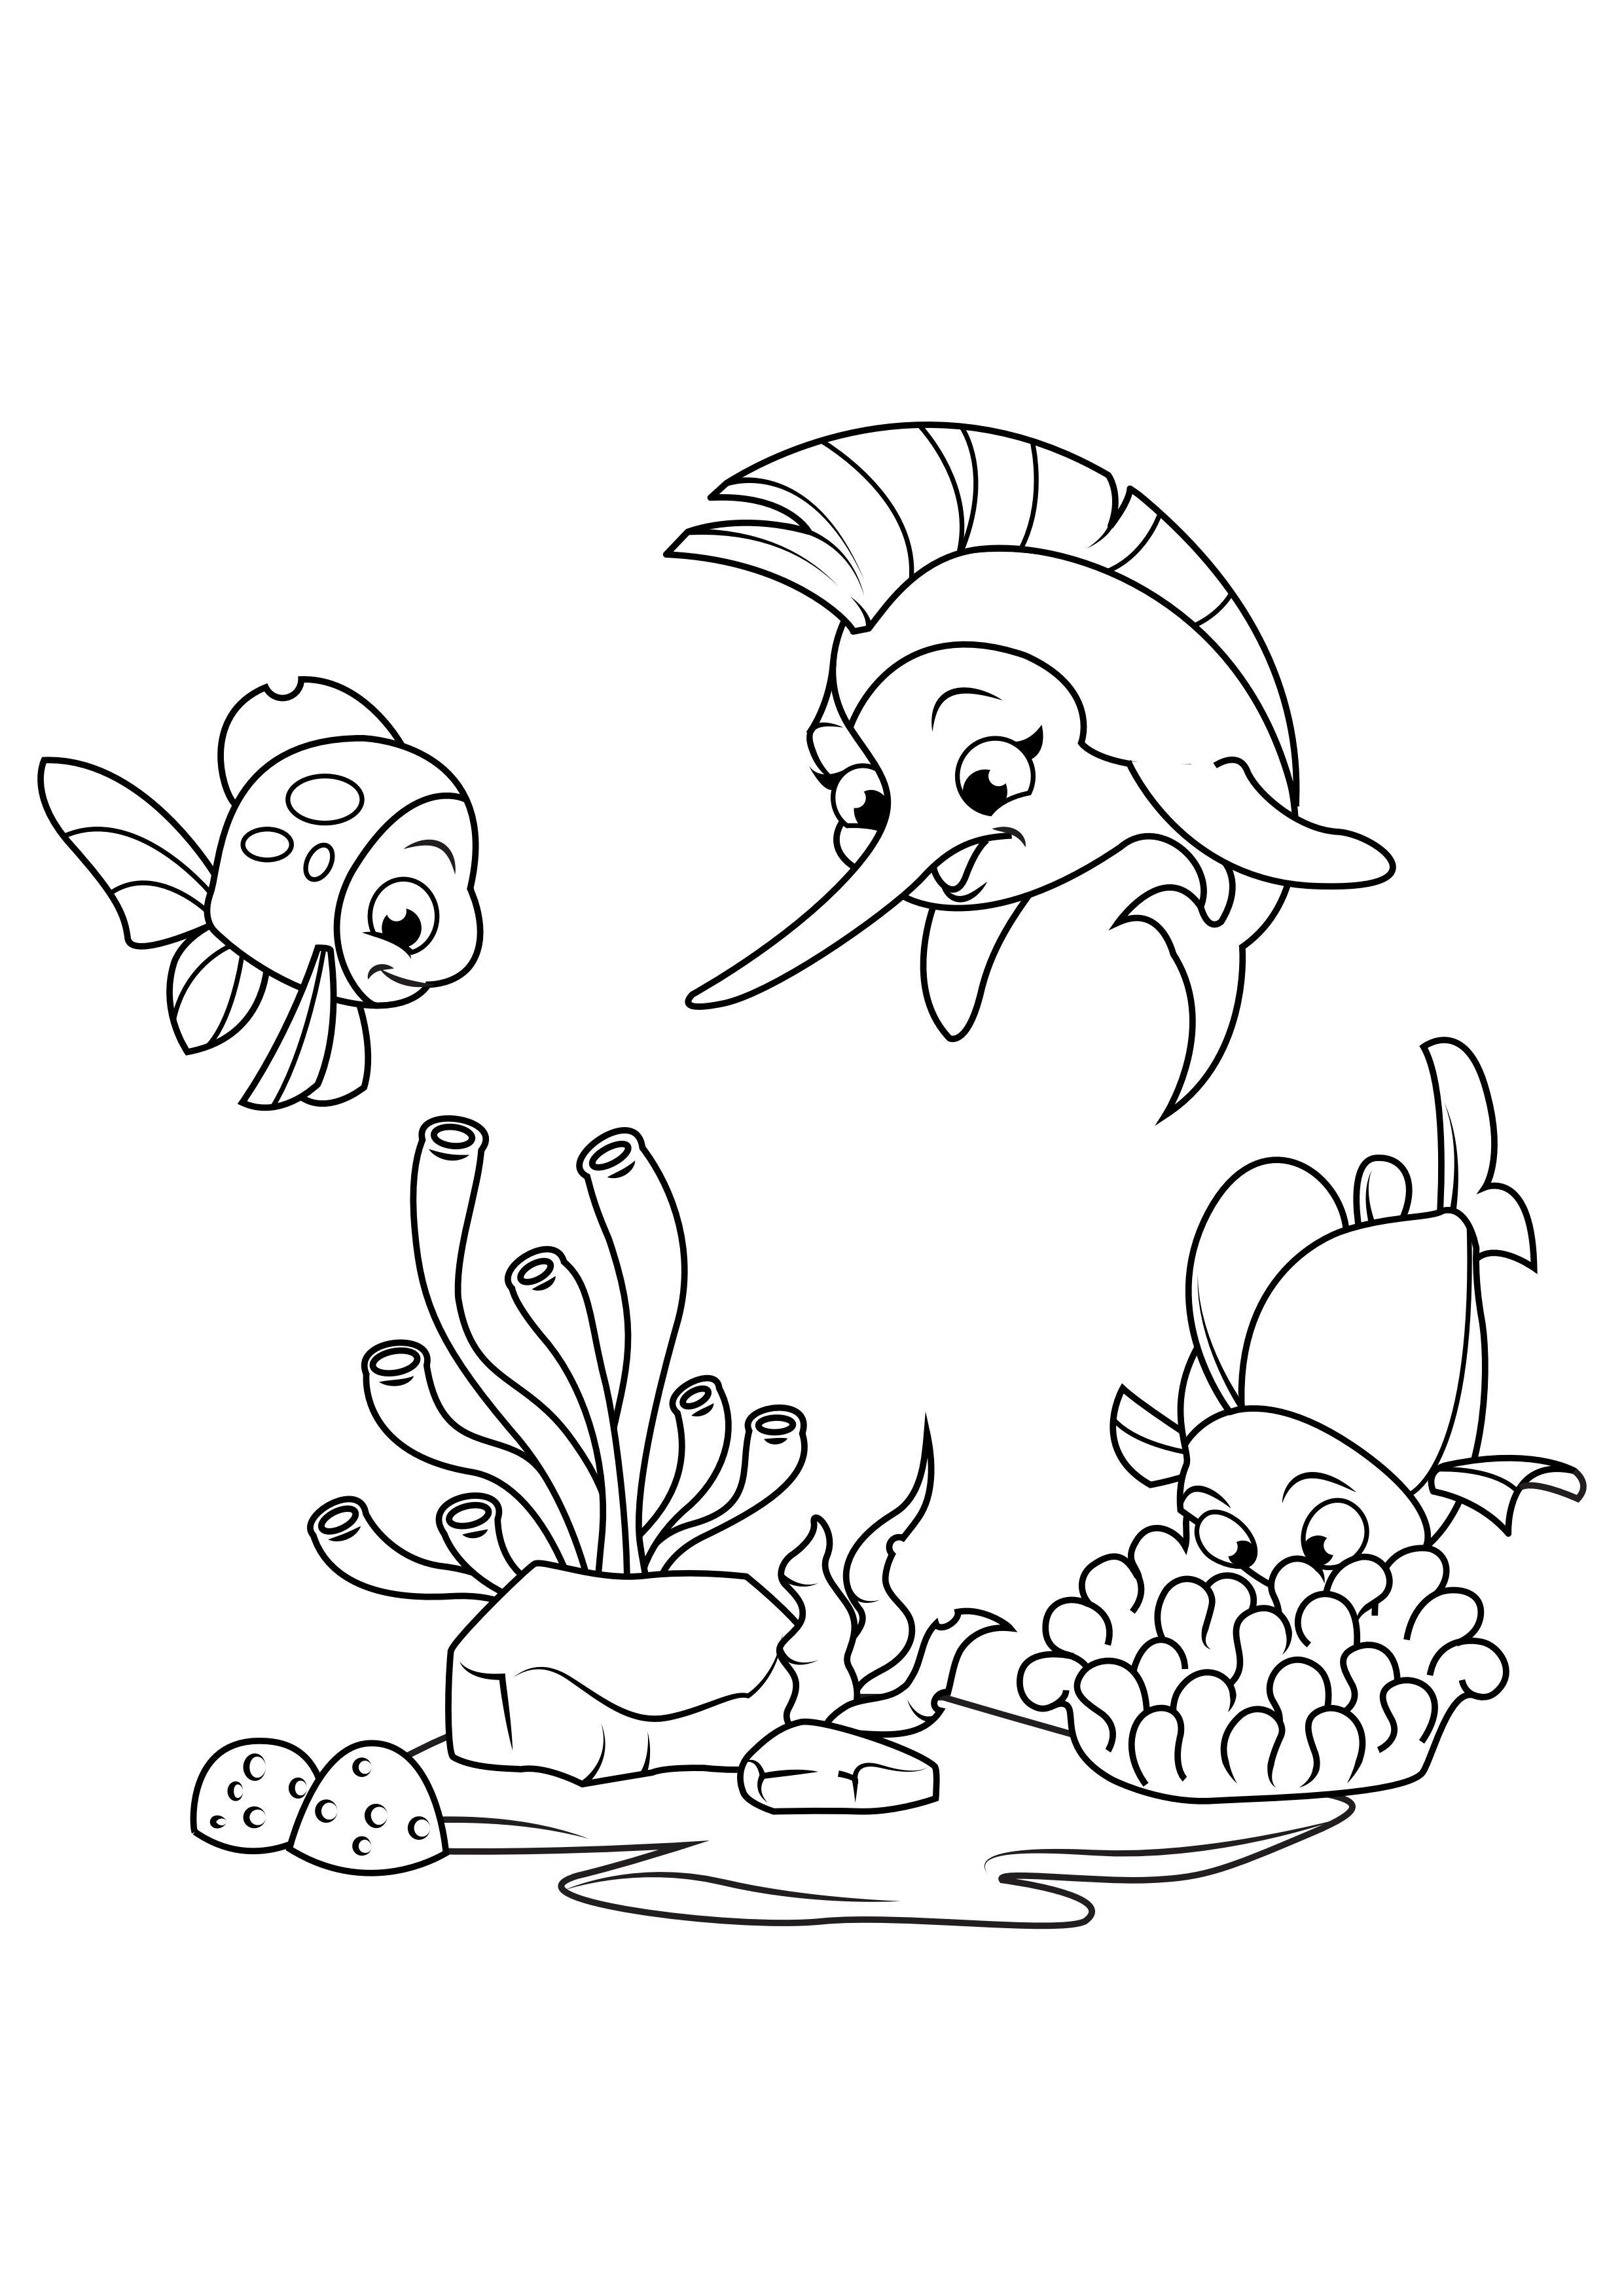 Dibujo para colorear pez espada juega con pescado